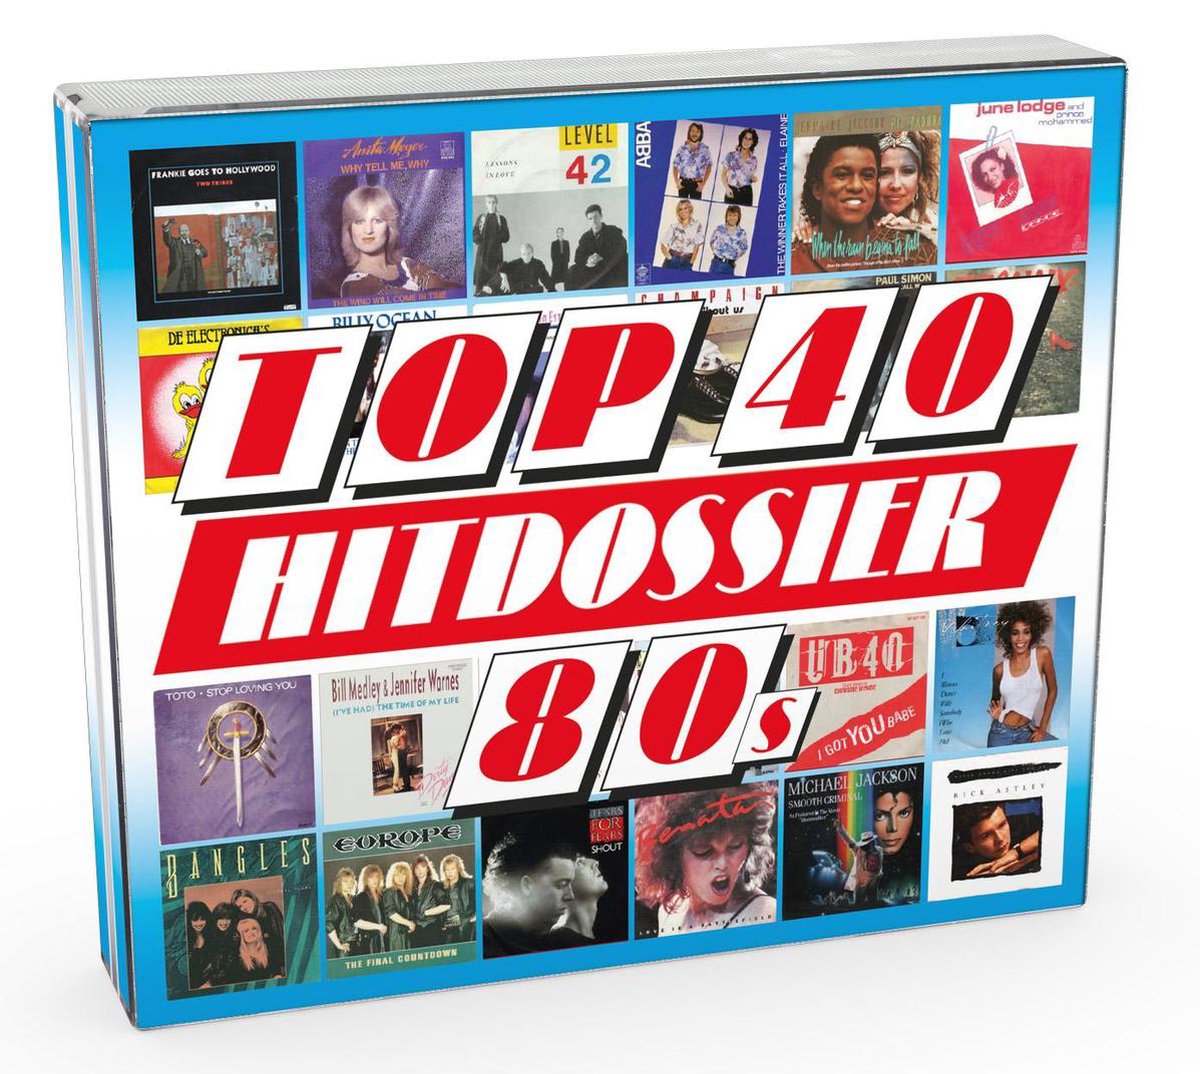 Top 40 Hitdossier - 80s - V/a